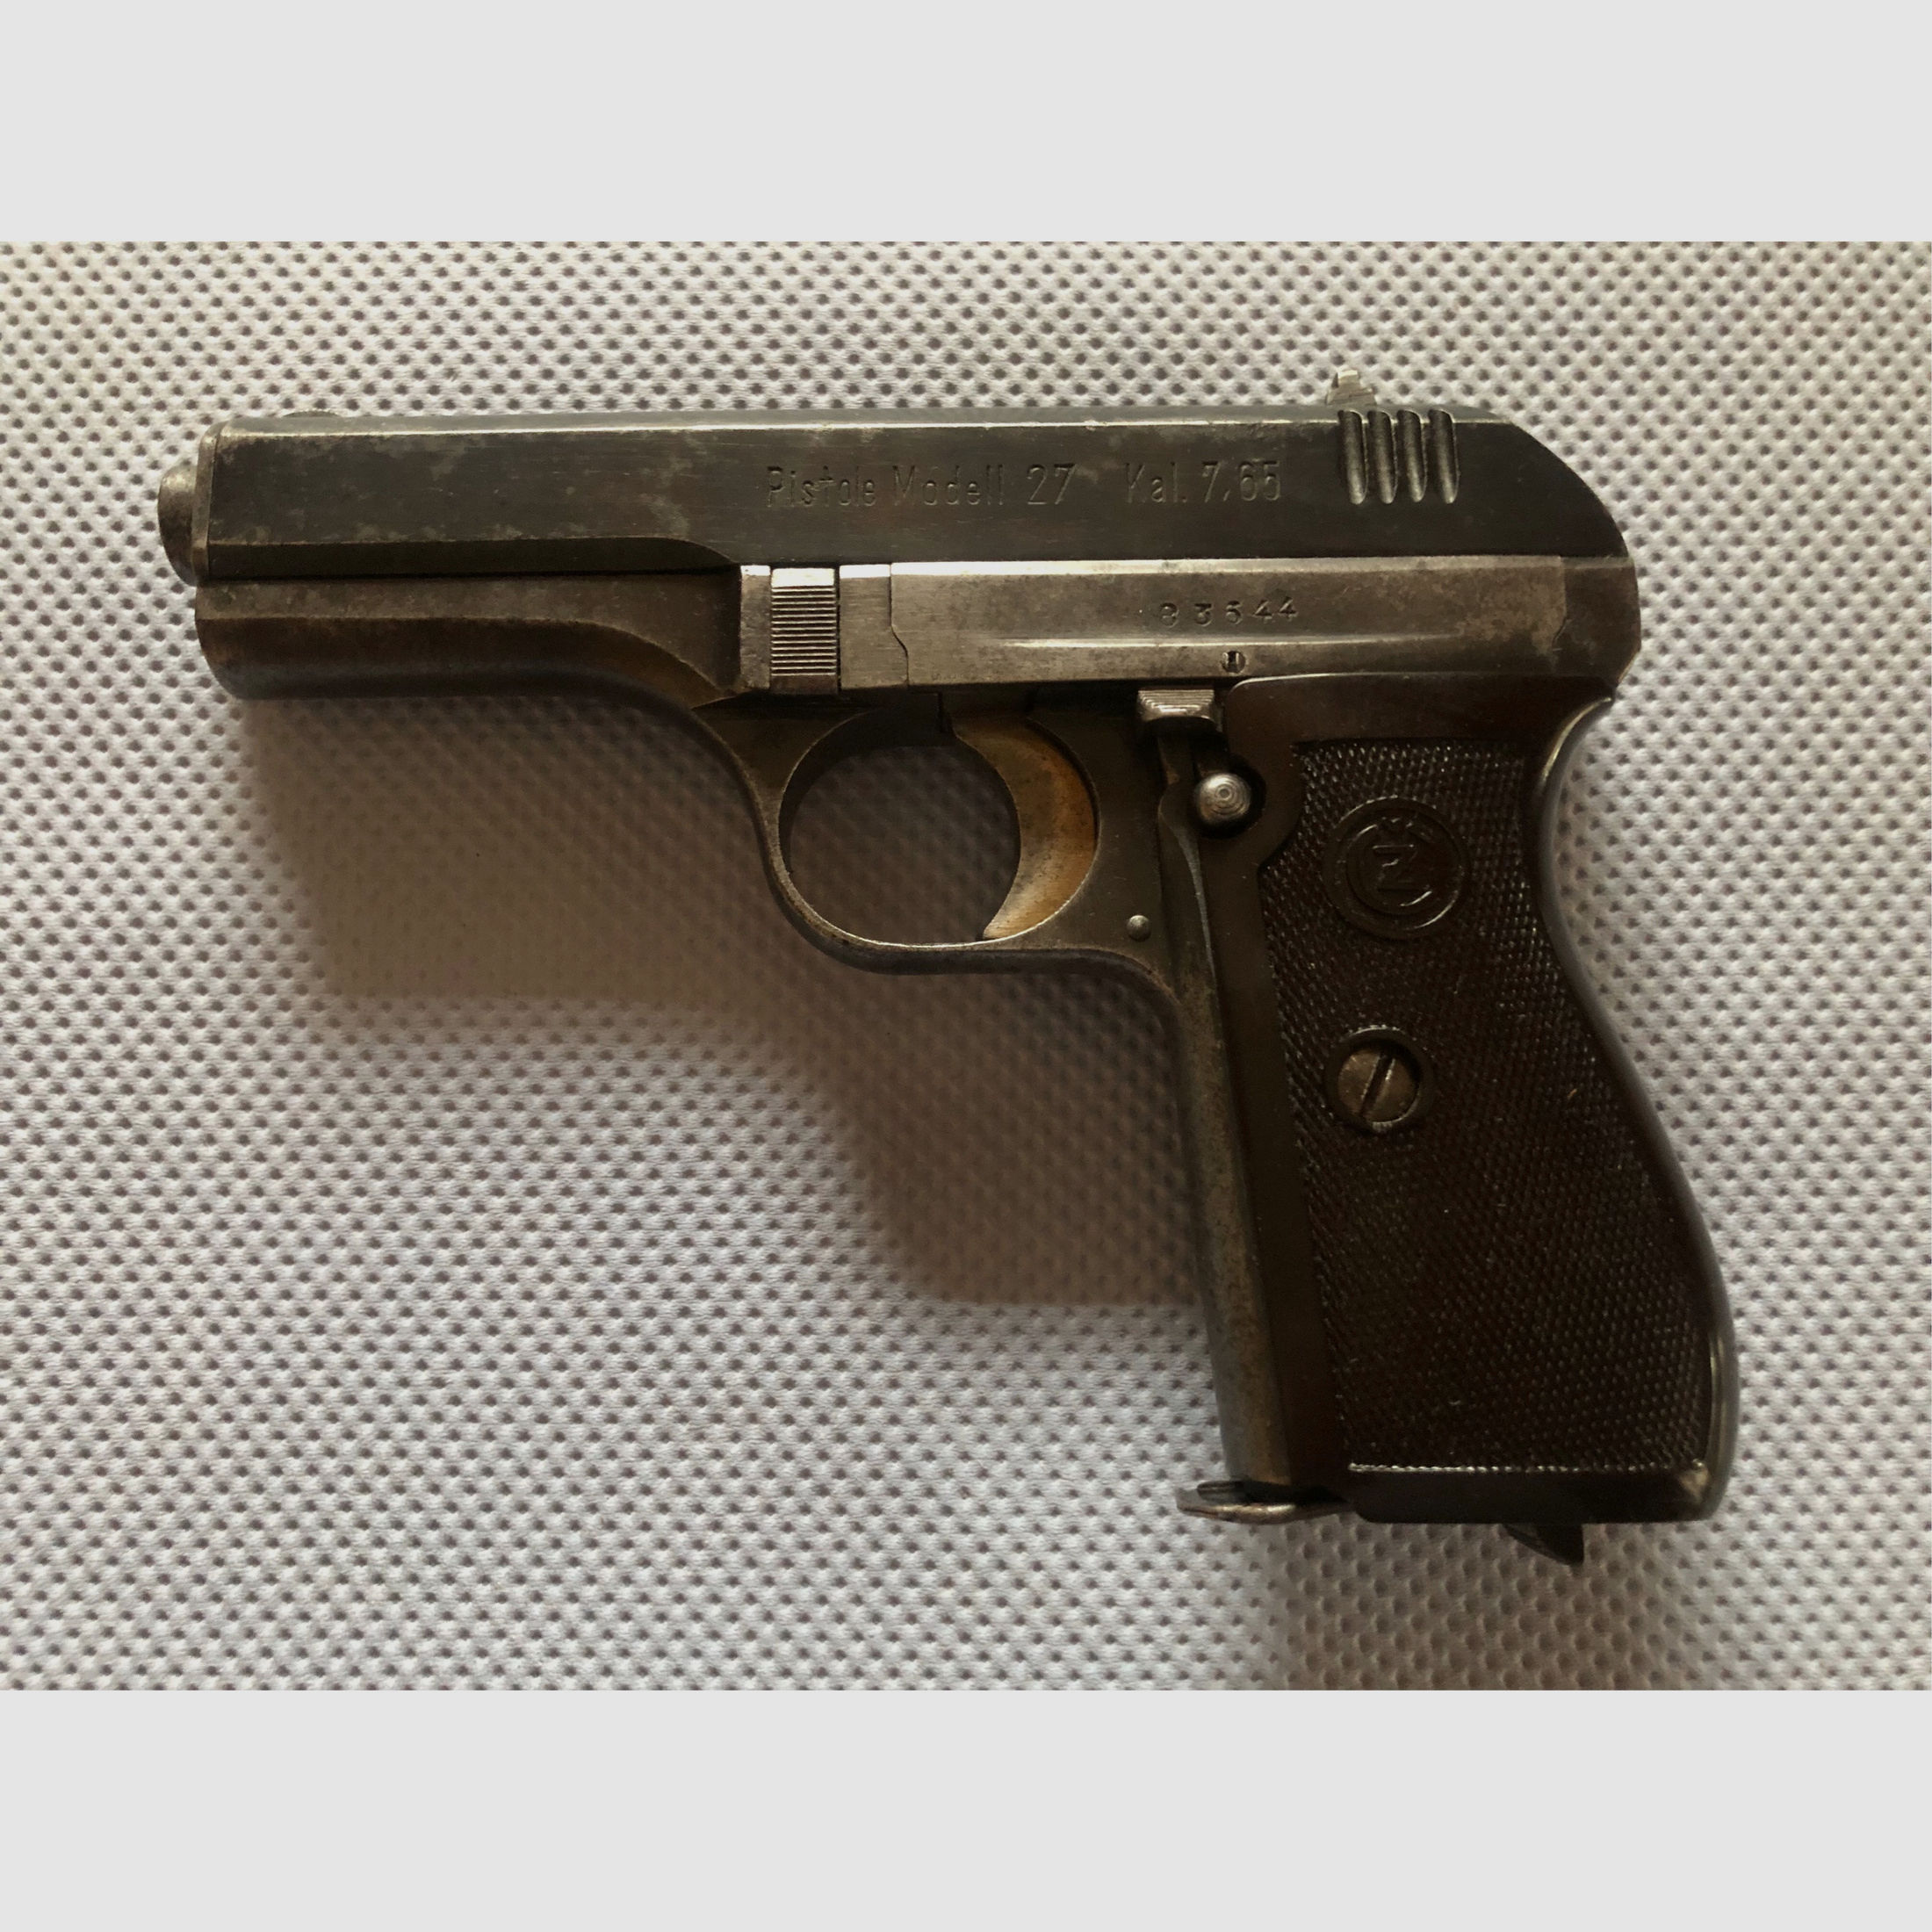 Pistole Modell 27 Kal. 7,65 Browning, Böhmische Waffenfabrik A.G. mit Originaltasche und Ersatzmagazin